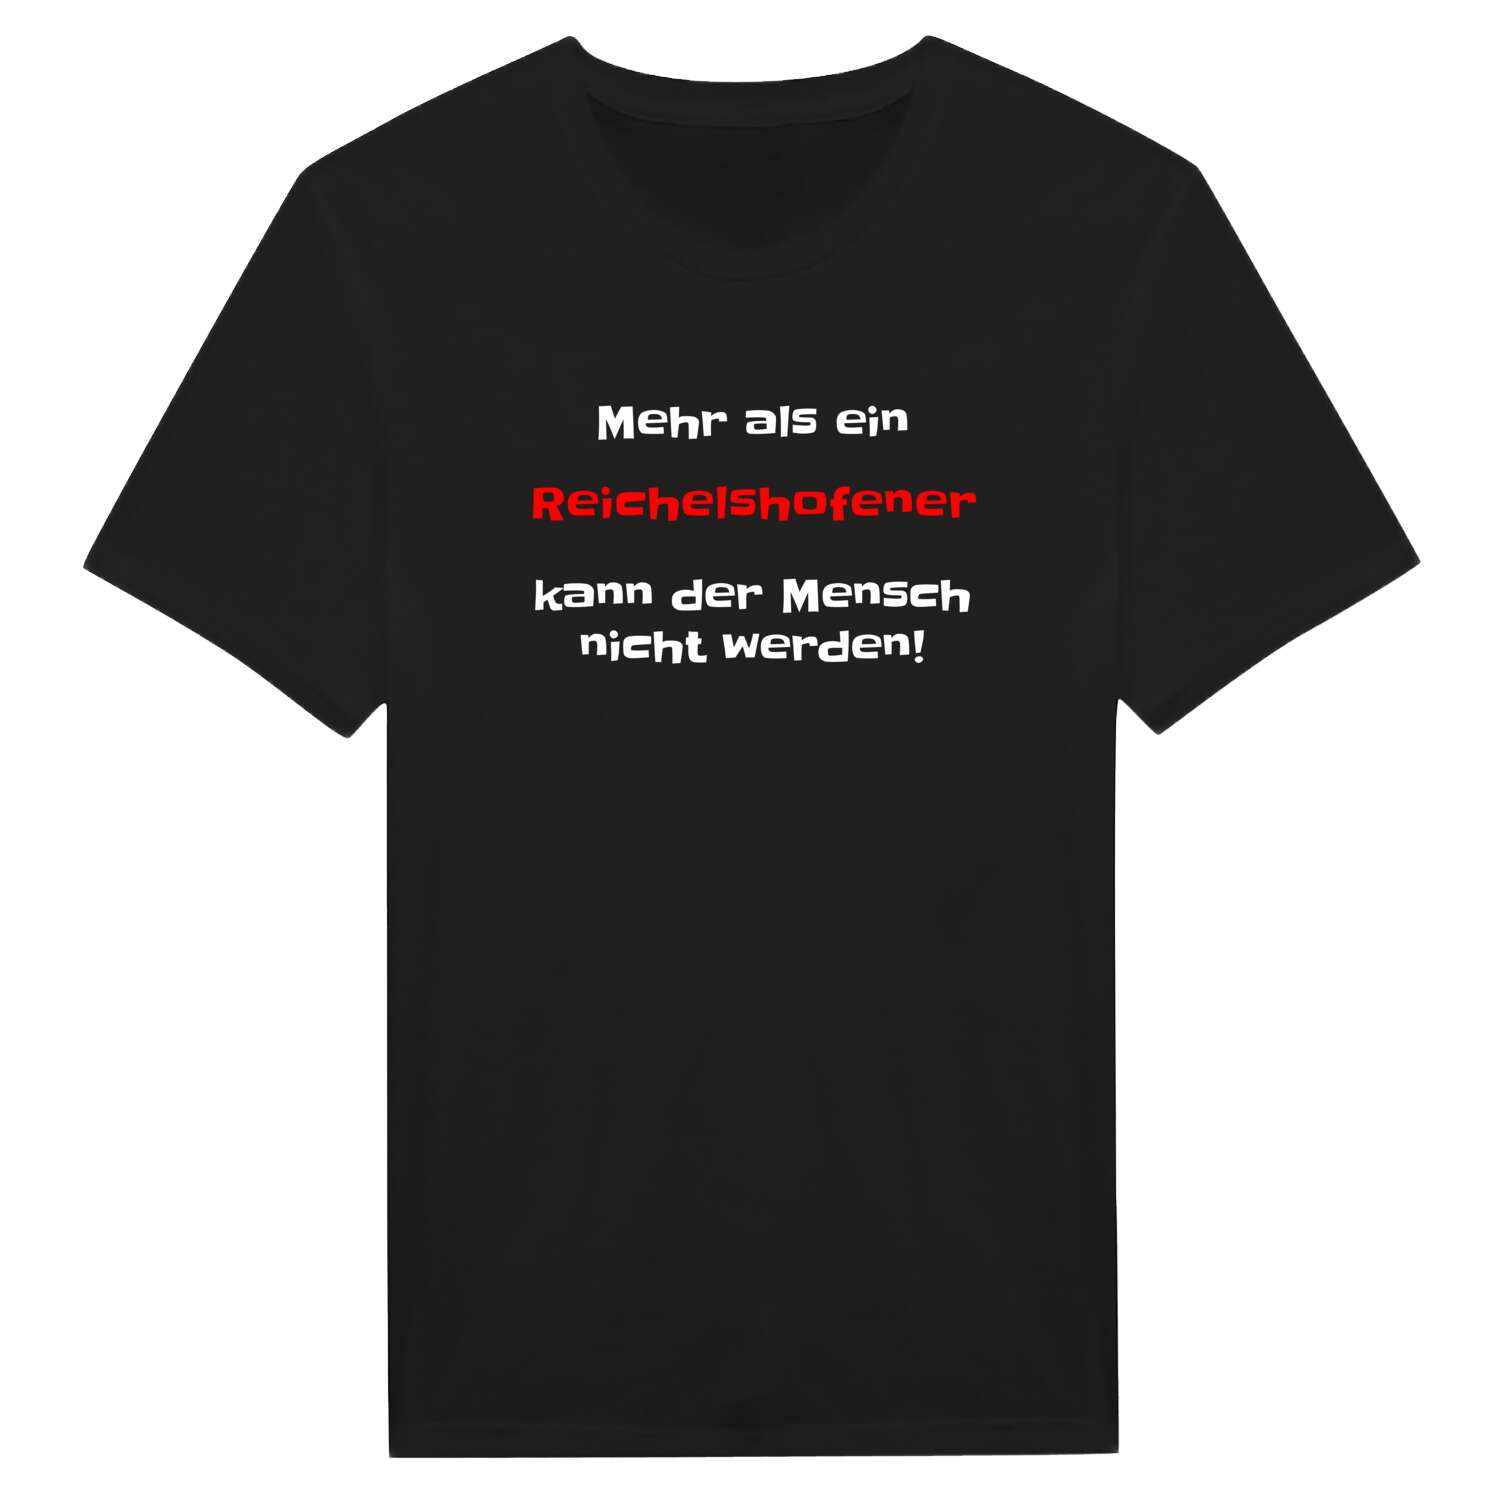 Reichelshofen T-Shirt »Mehr als ein«